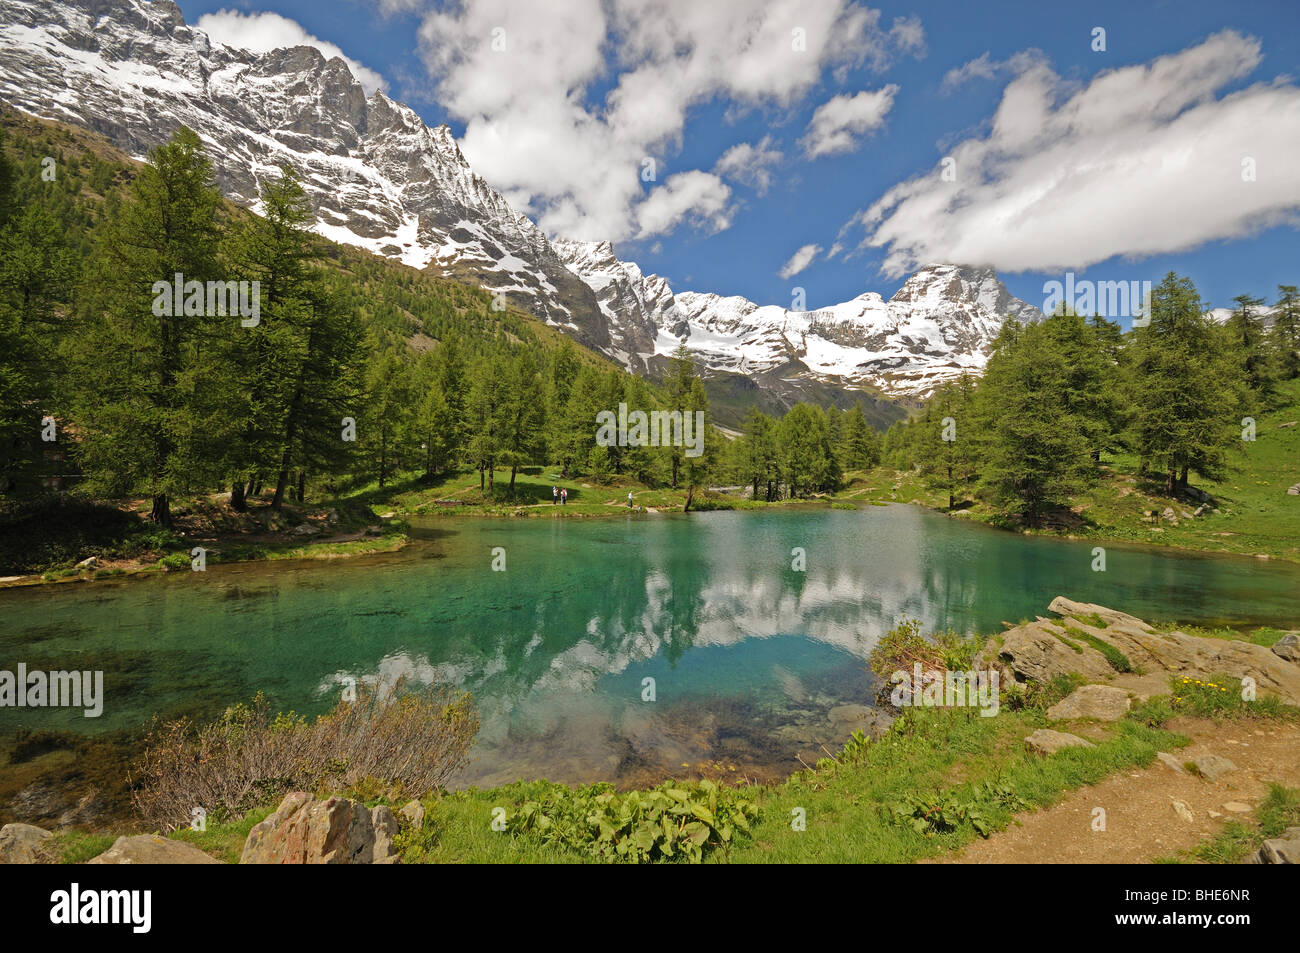 Il Lago Blu o il lago blu a Valtournenche Italia con la vetta del Cervino o il Cervino in background. Foto Stock